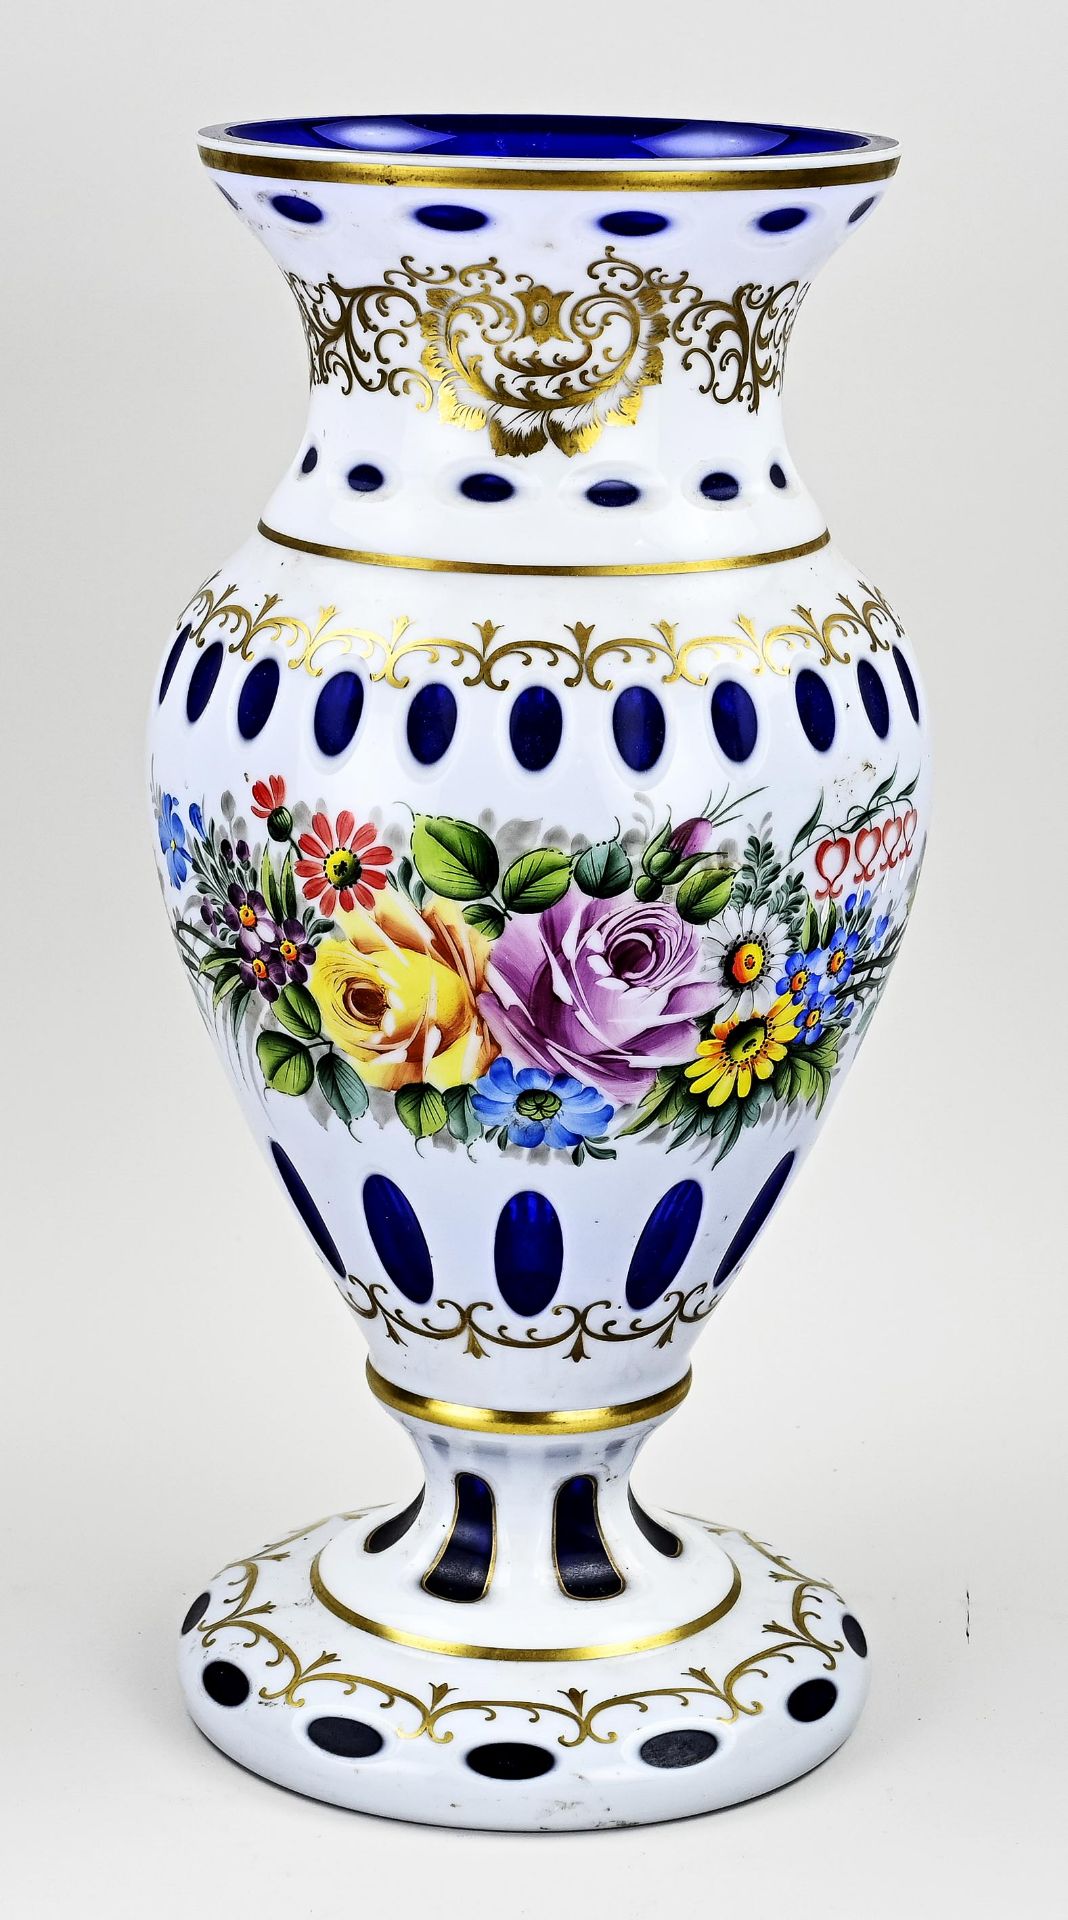 Capital Bohemian vase, H 43 cm.